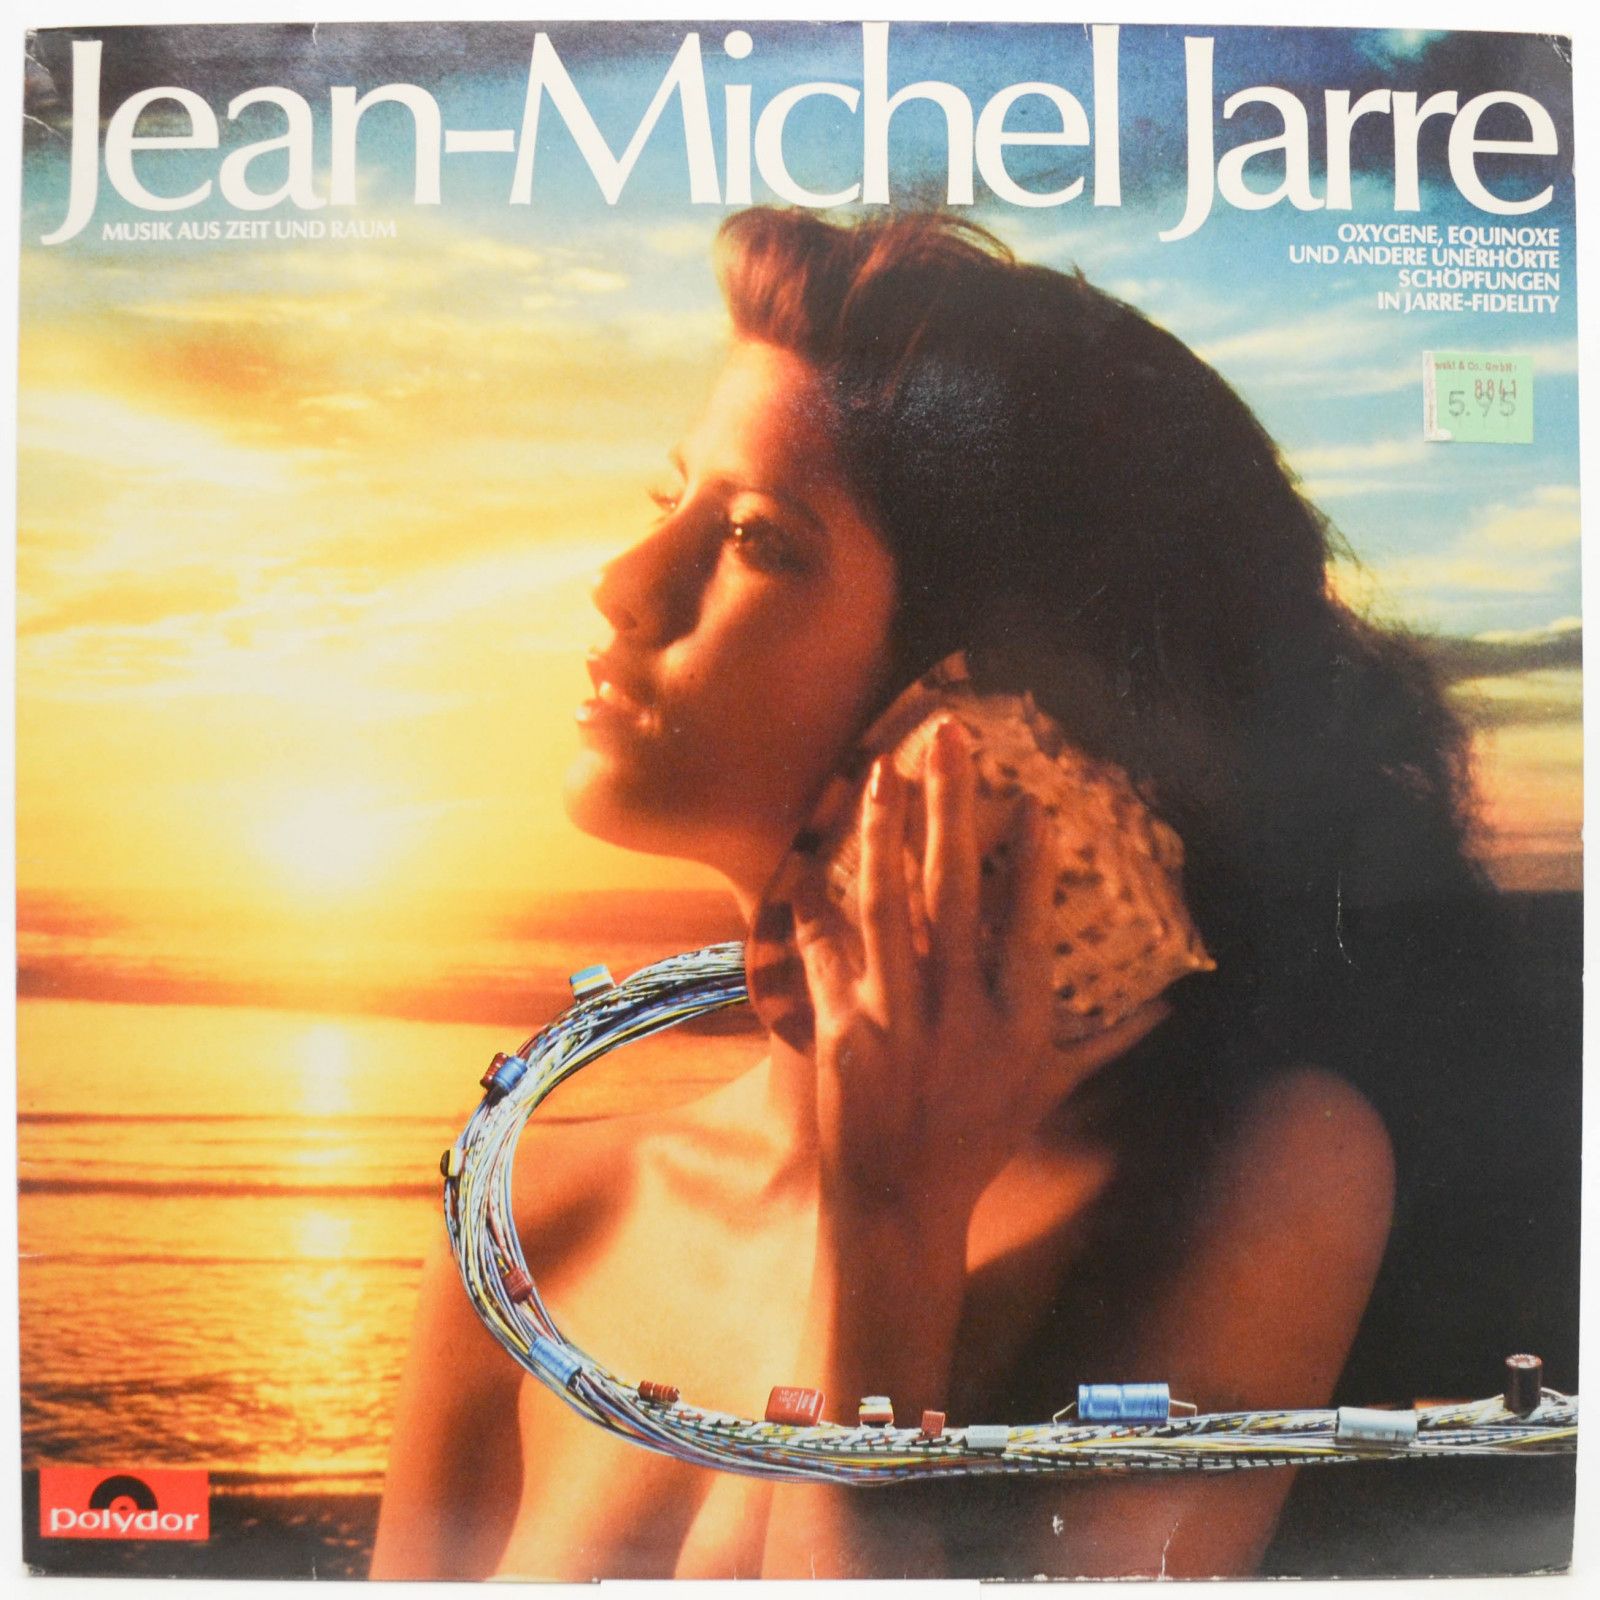 Jean-Michel Jarre — Musik Aus Zeit Und Raum, 1983